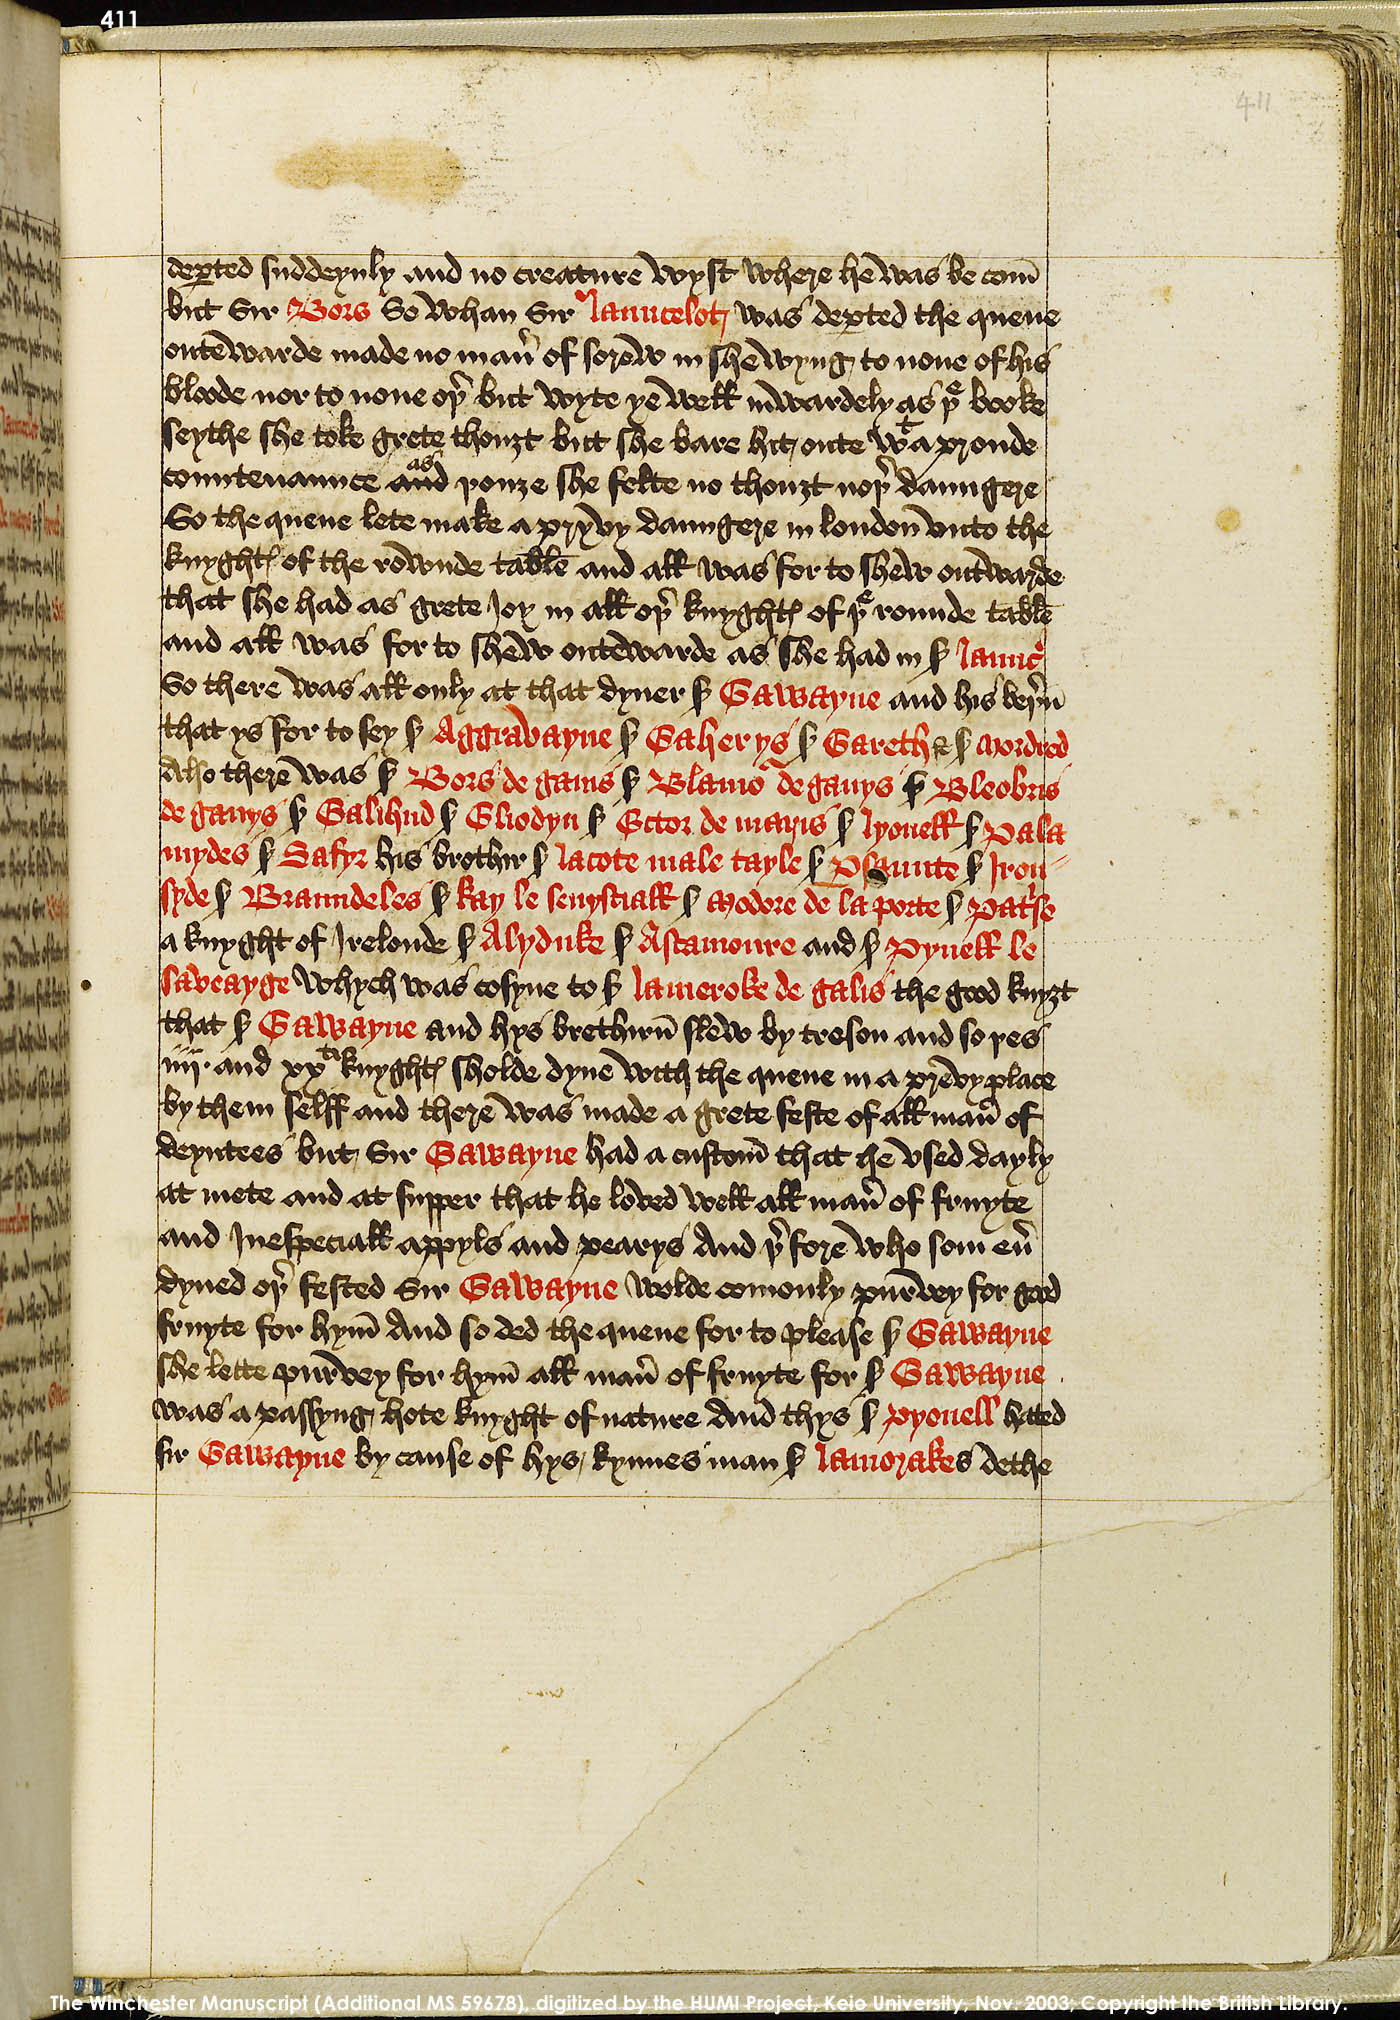 Folio 411r